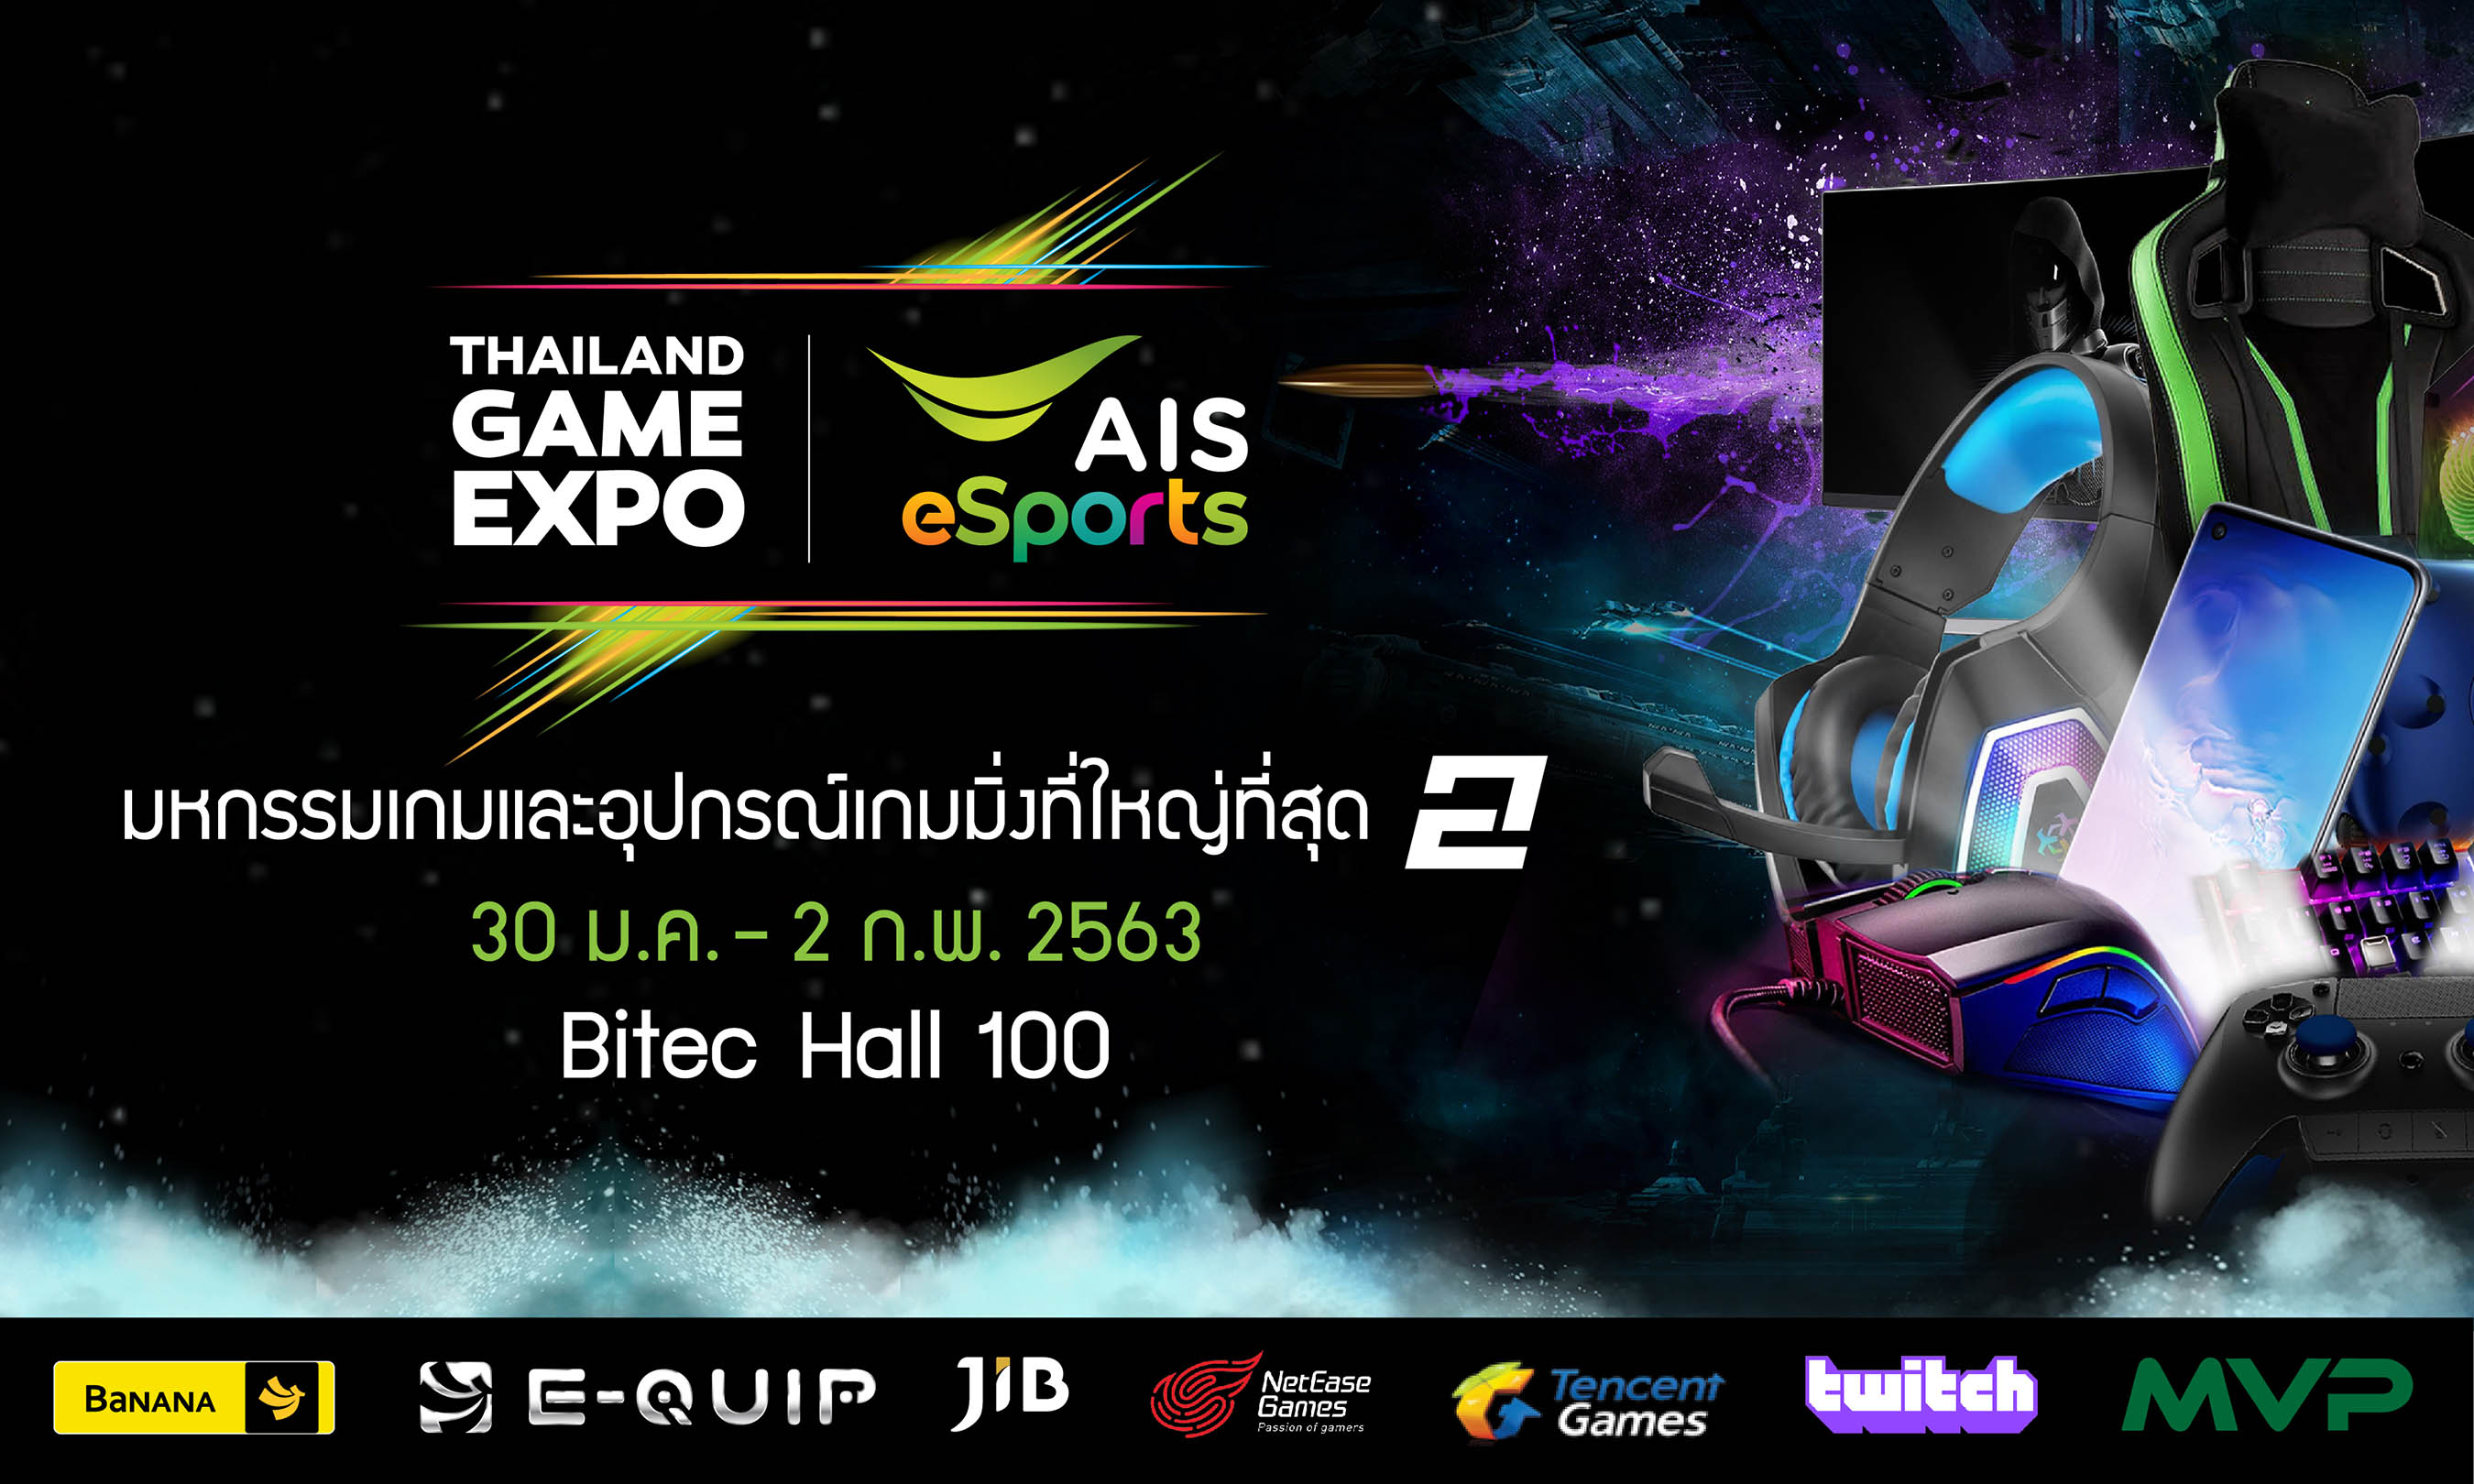 กระหึ่ม! เอไอเอสจัดเต็มไฮไลท์เด็ดสุดปัง 4 วันเต็มในงาน Thailand Game Expo by AIS eSports